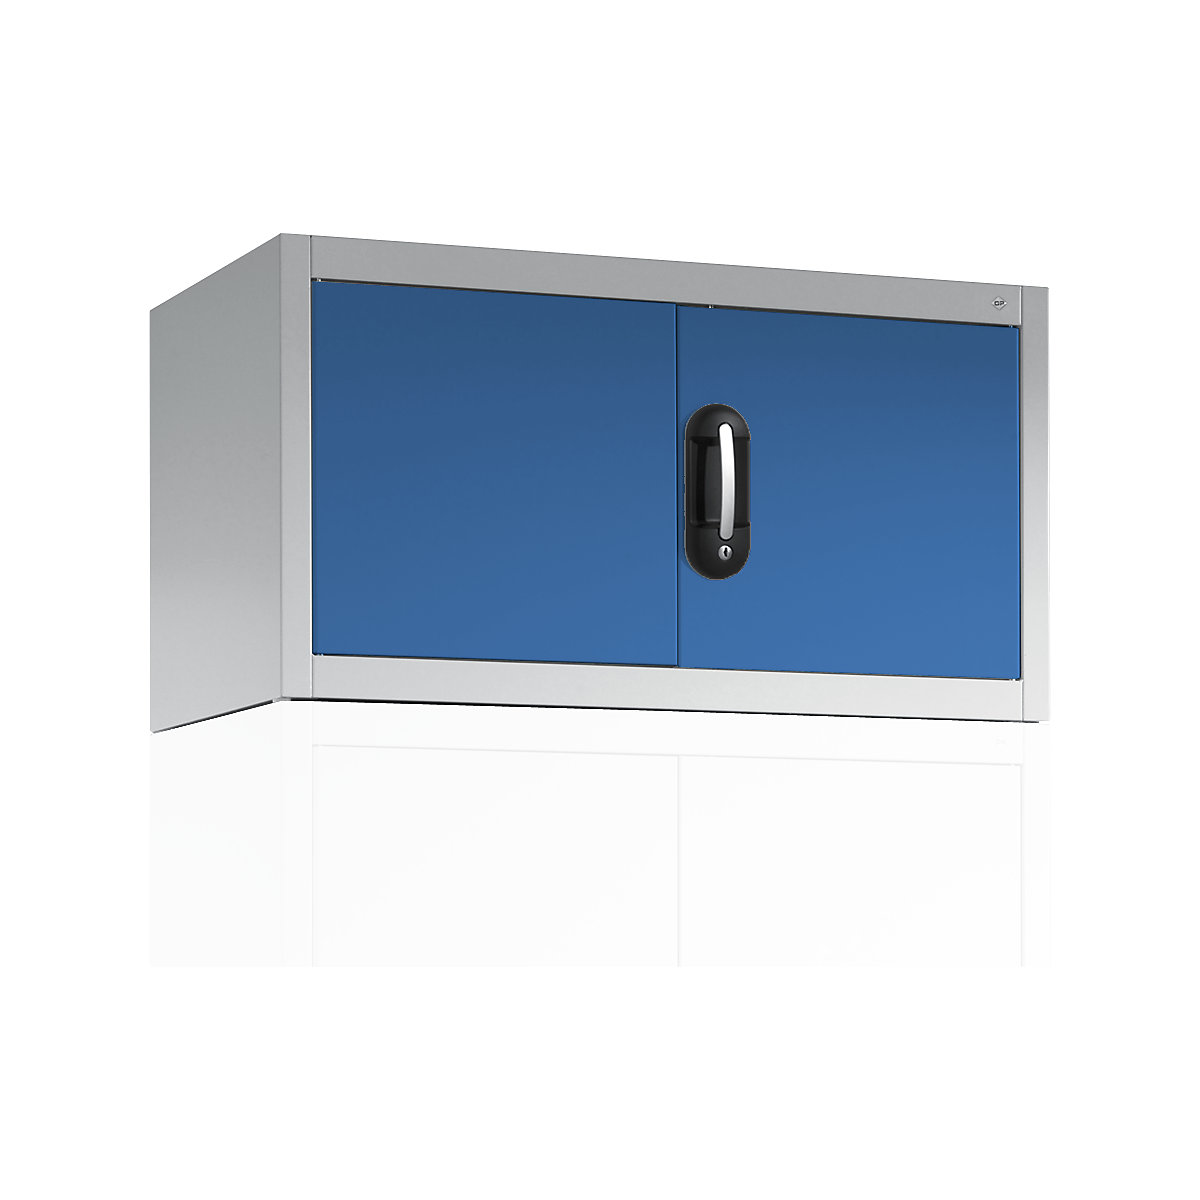 C+P – Rehausse ACURADO pour armoires à portes battantes, h x l x p 500 x 930 x 400 mm, gris clair / bleu clair